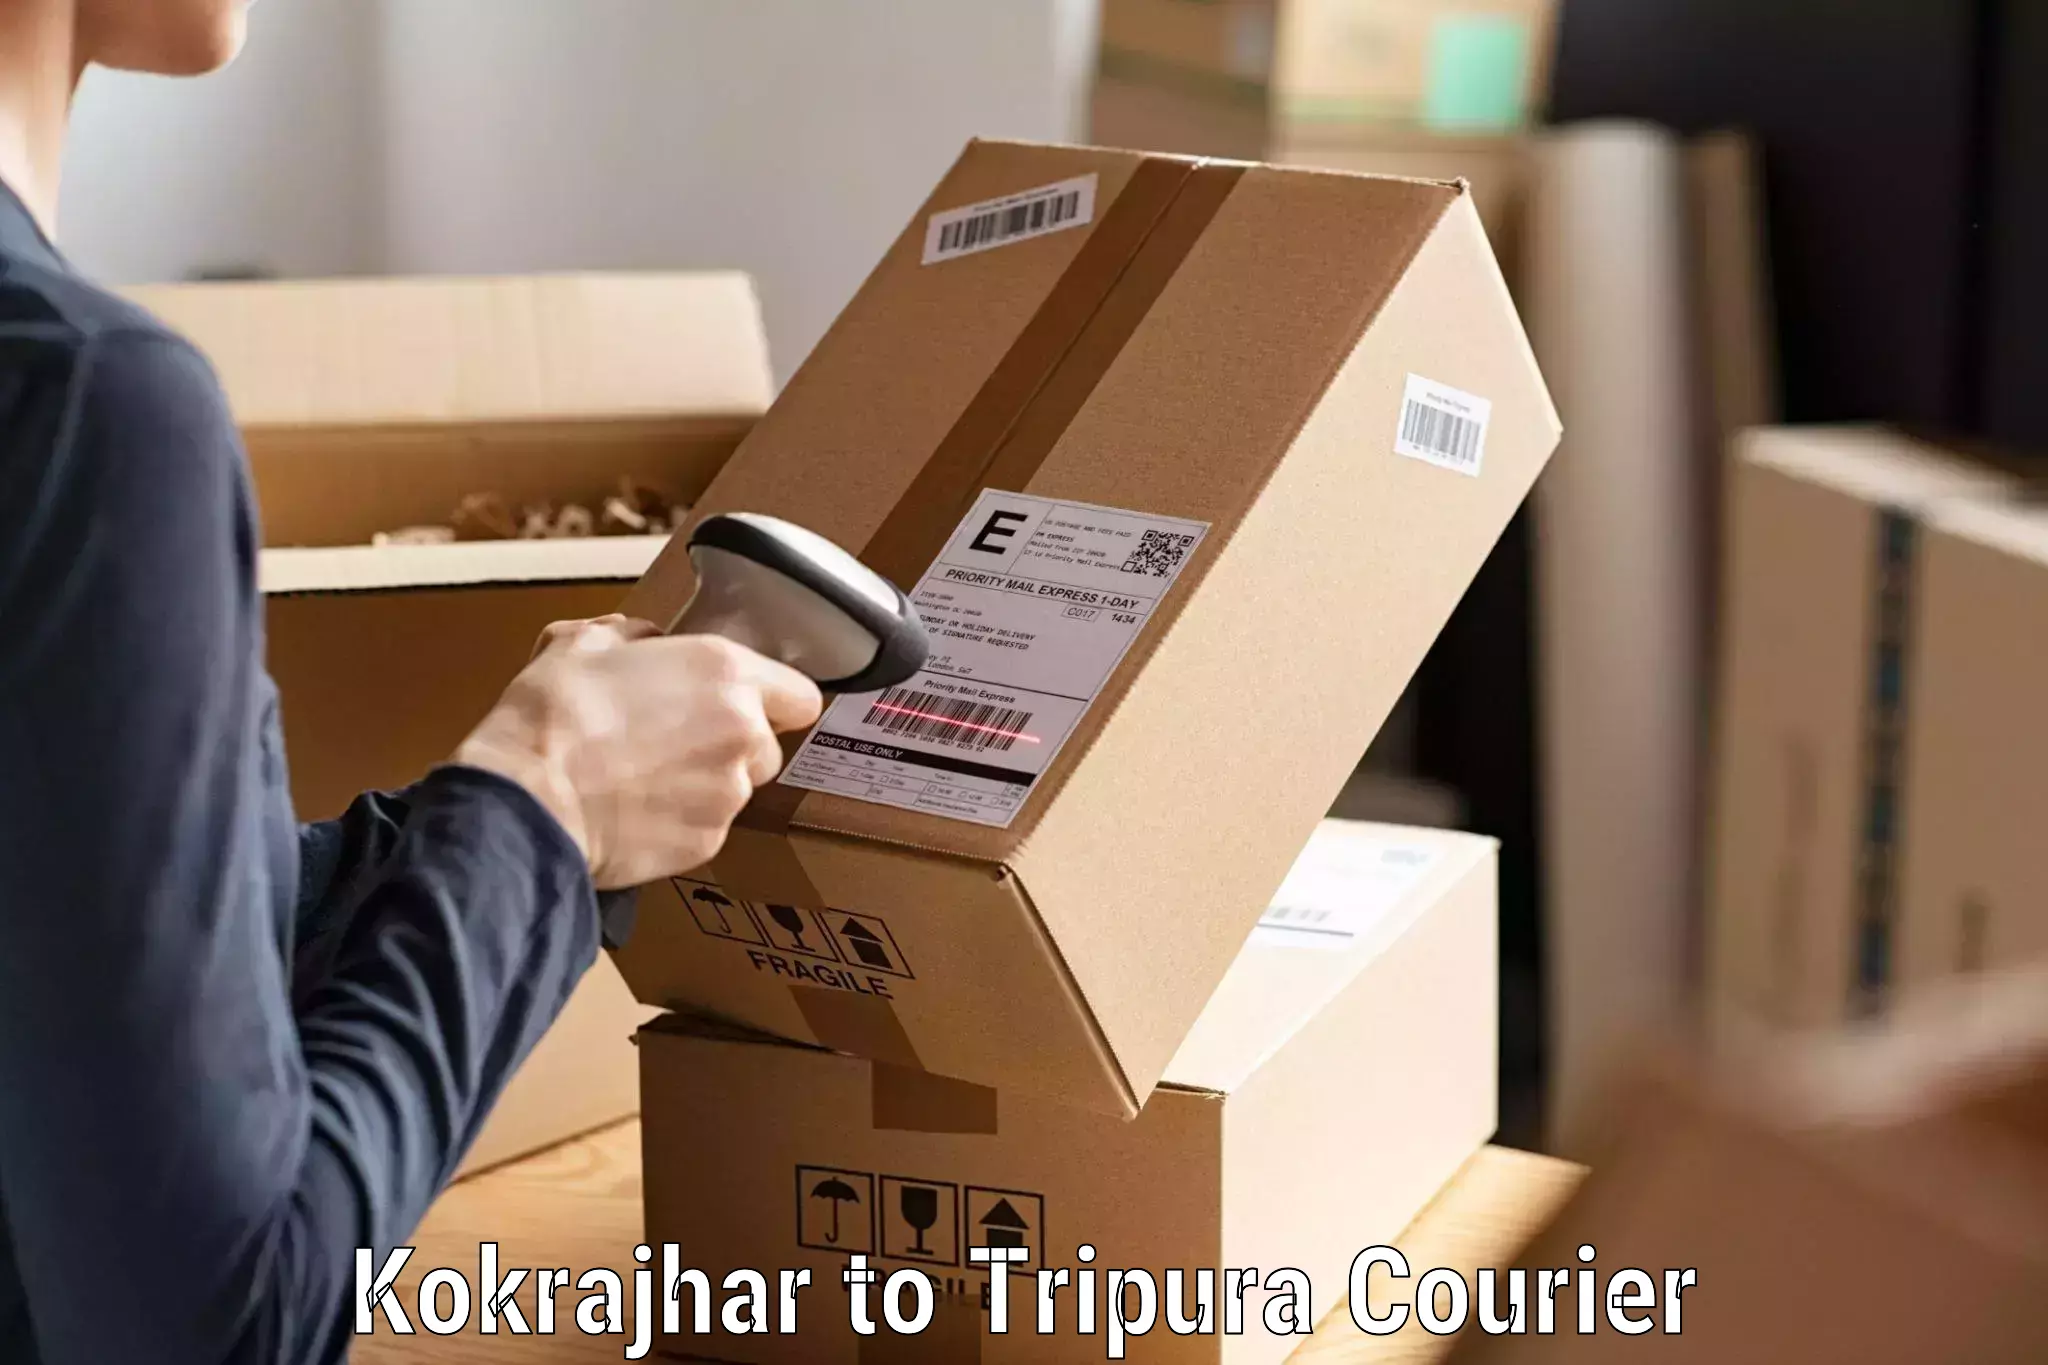 Comprehensive parcel tracking Kokrajhar to Bishalgarh